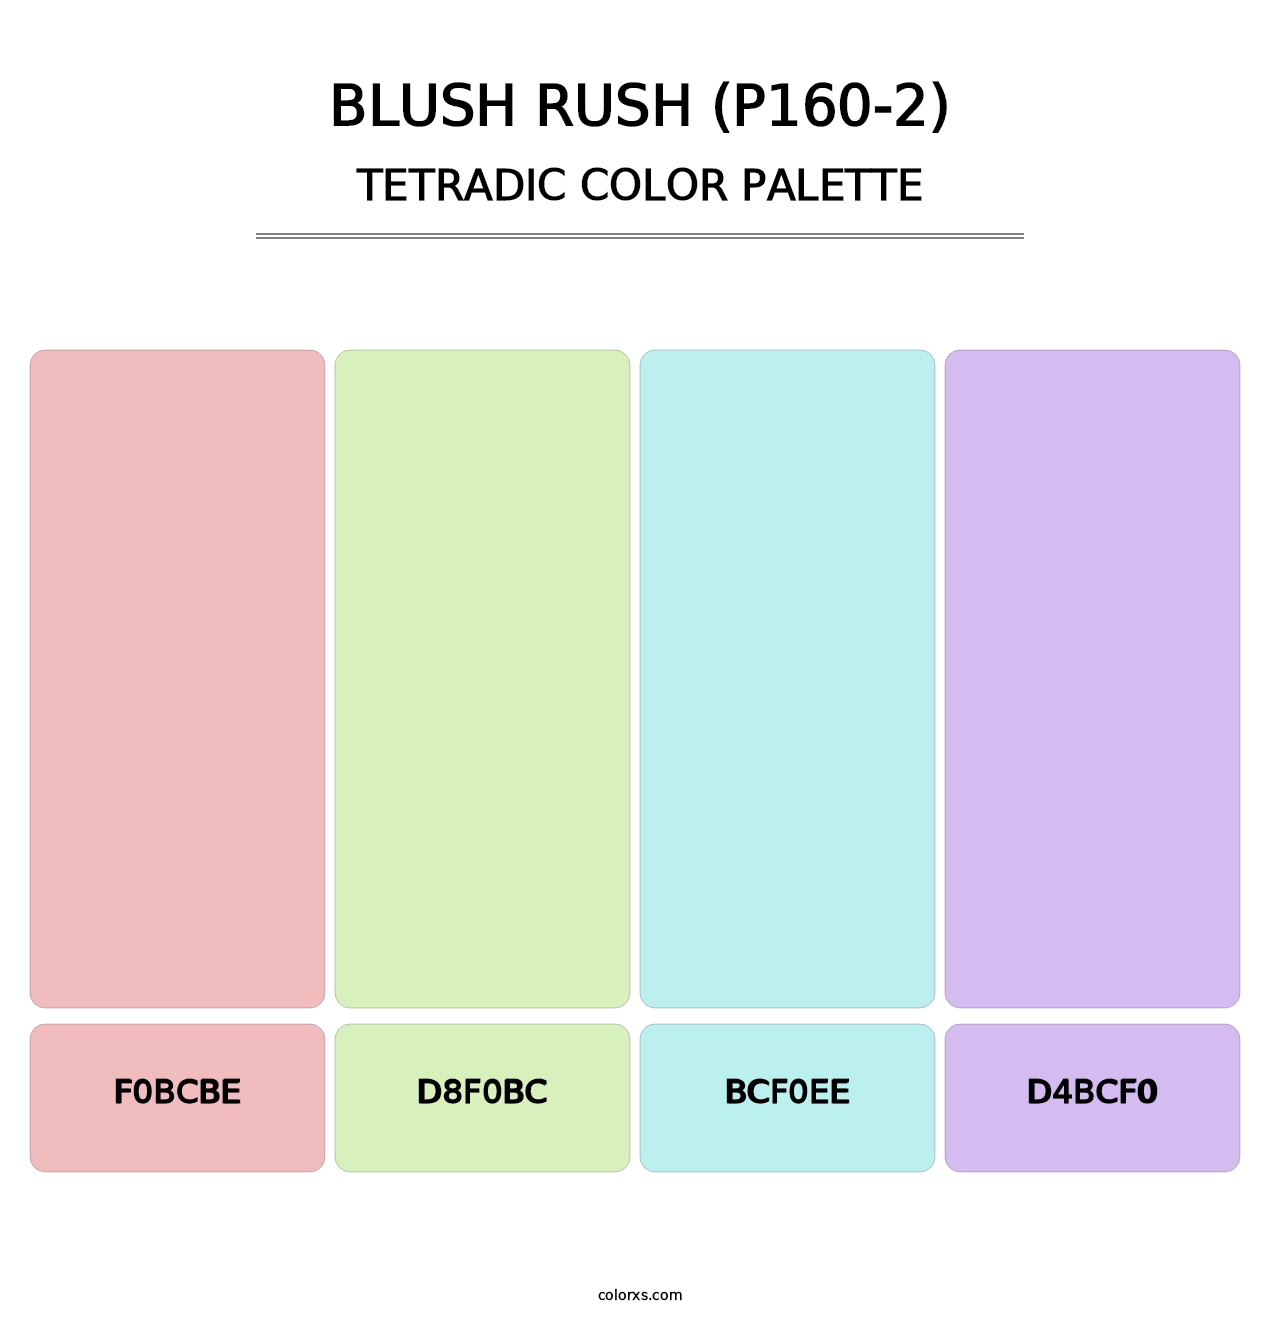 Blush Rush (P160-2) - Tetradic Color Palette